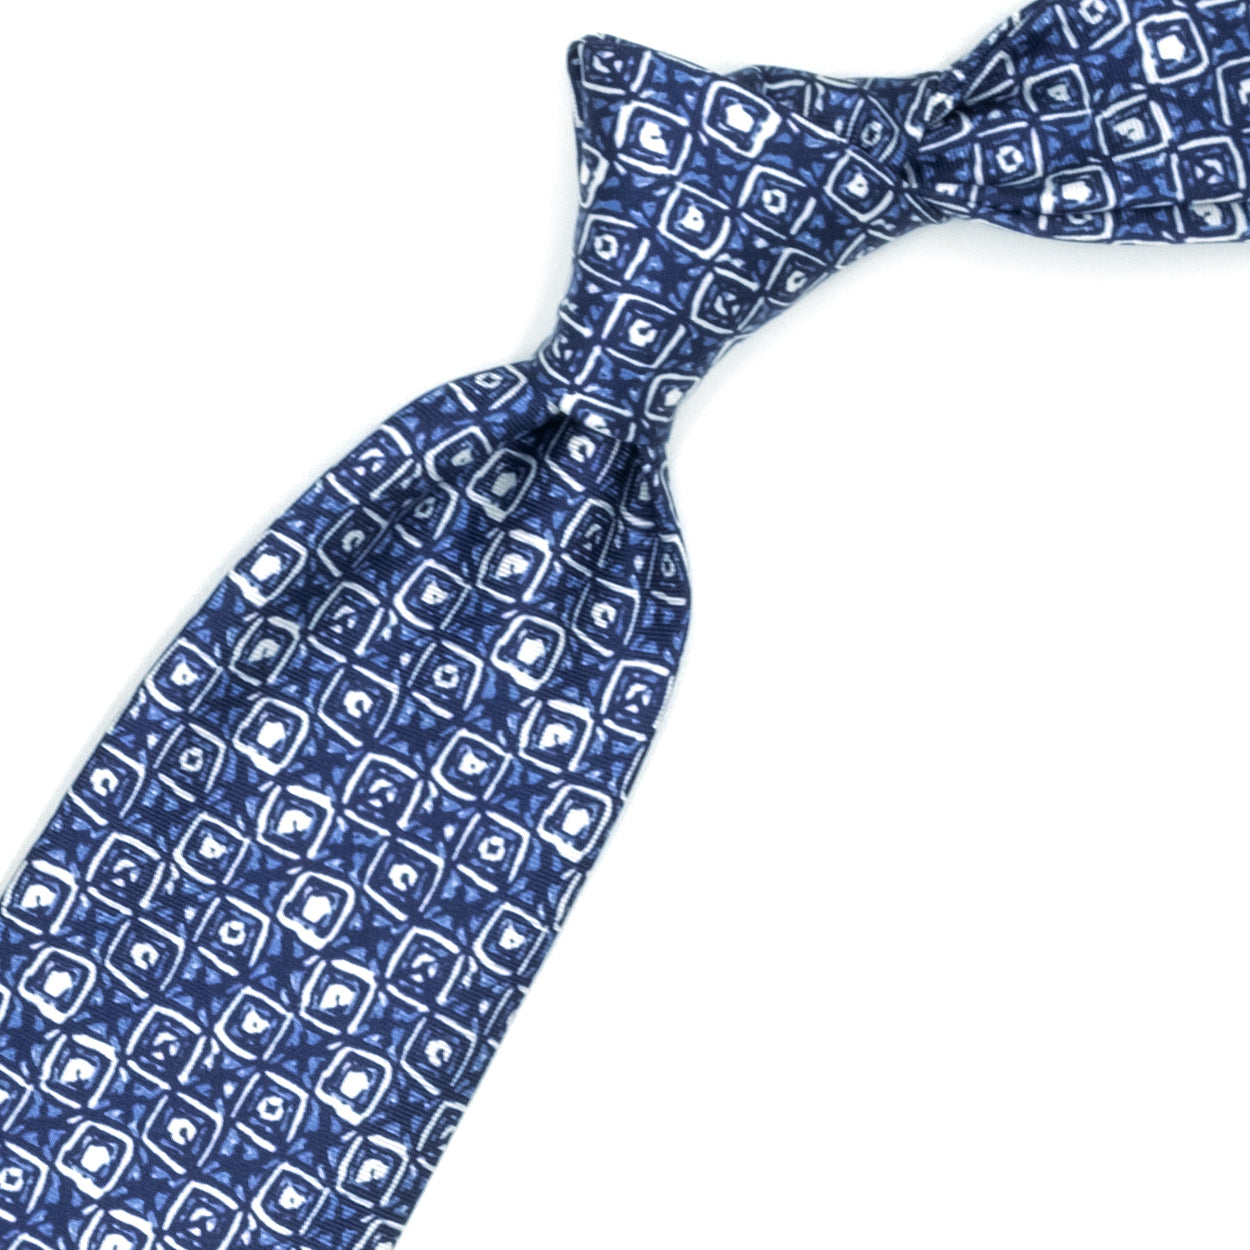 Cravatta azzurra con pattern astratto bianco e blu